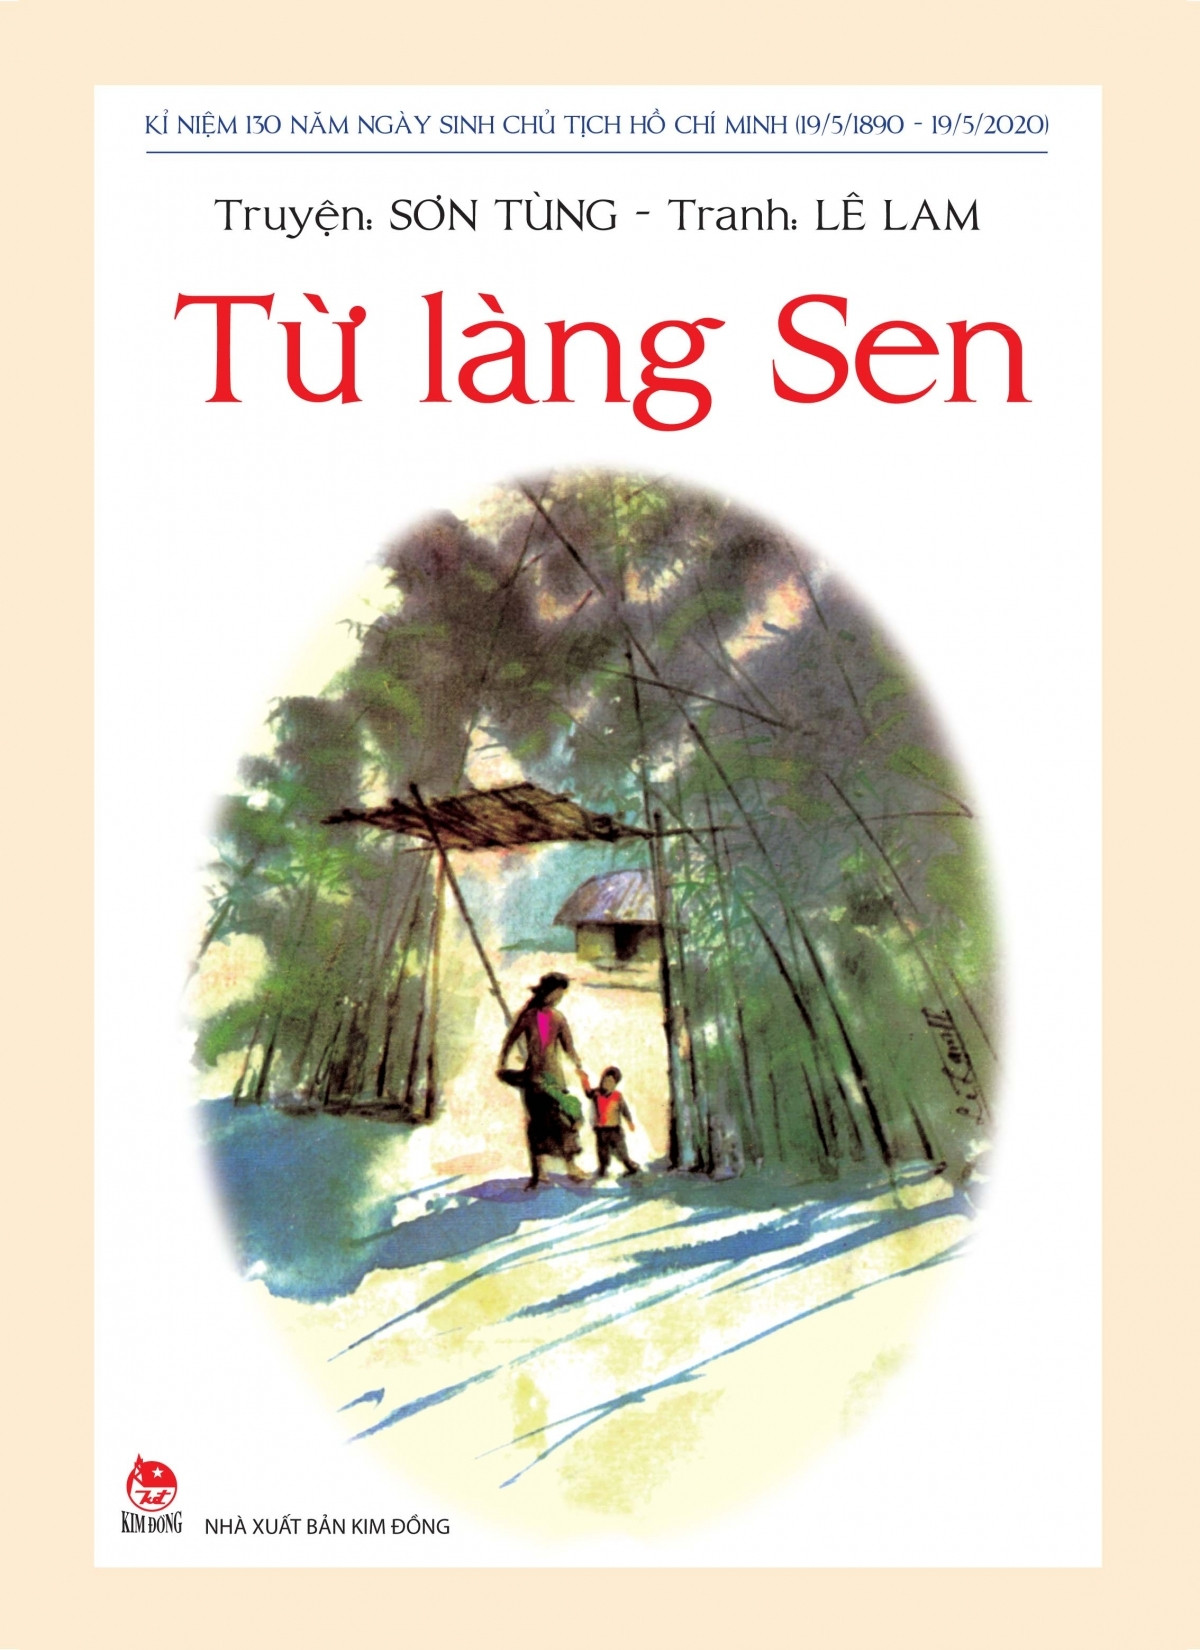 Trên cơ sở cuốn tiểu thuyết “Búp sen xanh”, nhiều tác phẩm viết về Chủ tịch Hồ Chí Minh đã ra đời.